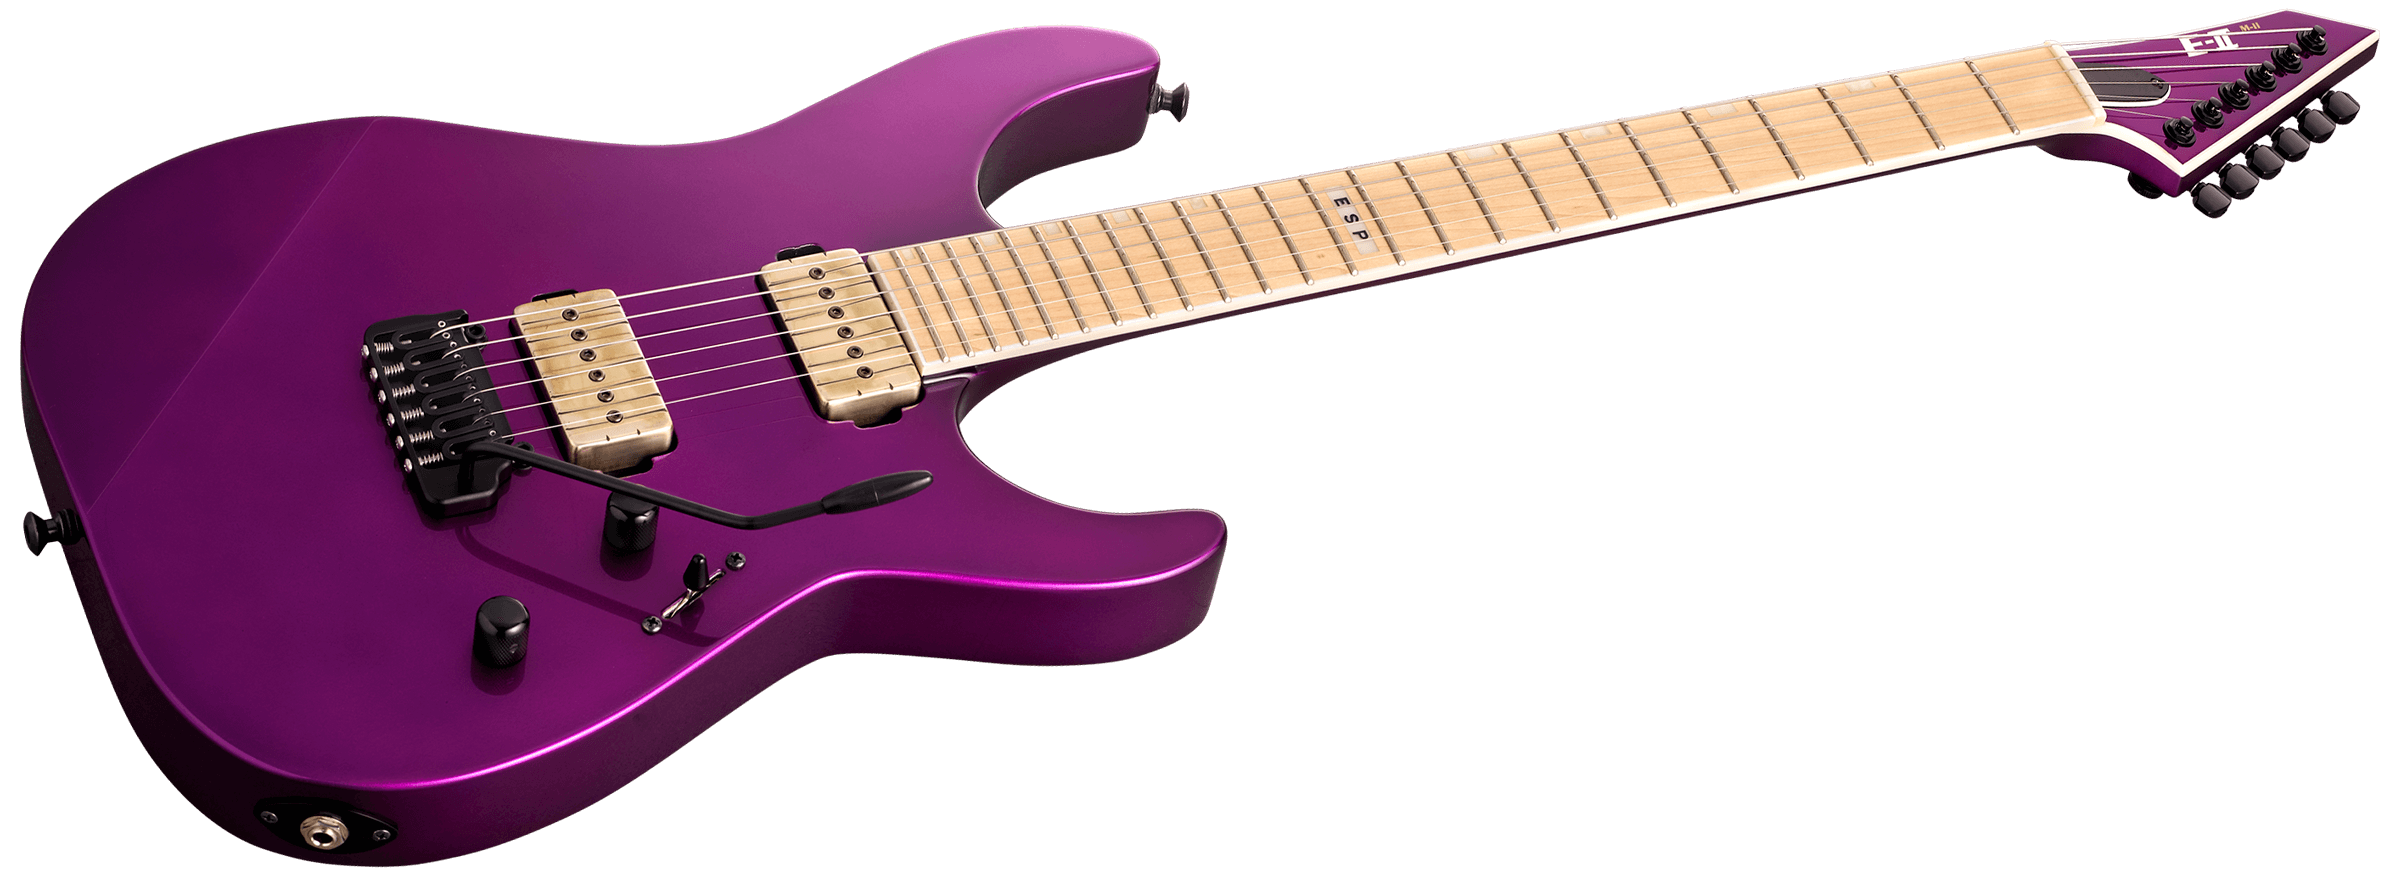 Esp E-ii Mii Hst P Jap 2s P90 Bare Knuckle Trem Mn - Voodoo Purple - Guitare Électrique Forme Str - Variation 2